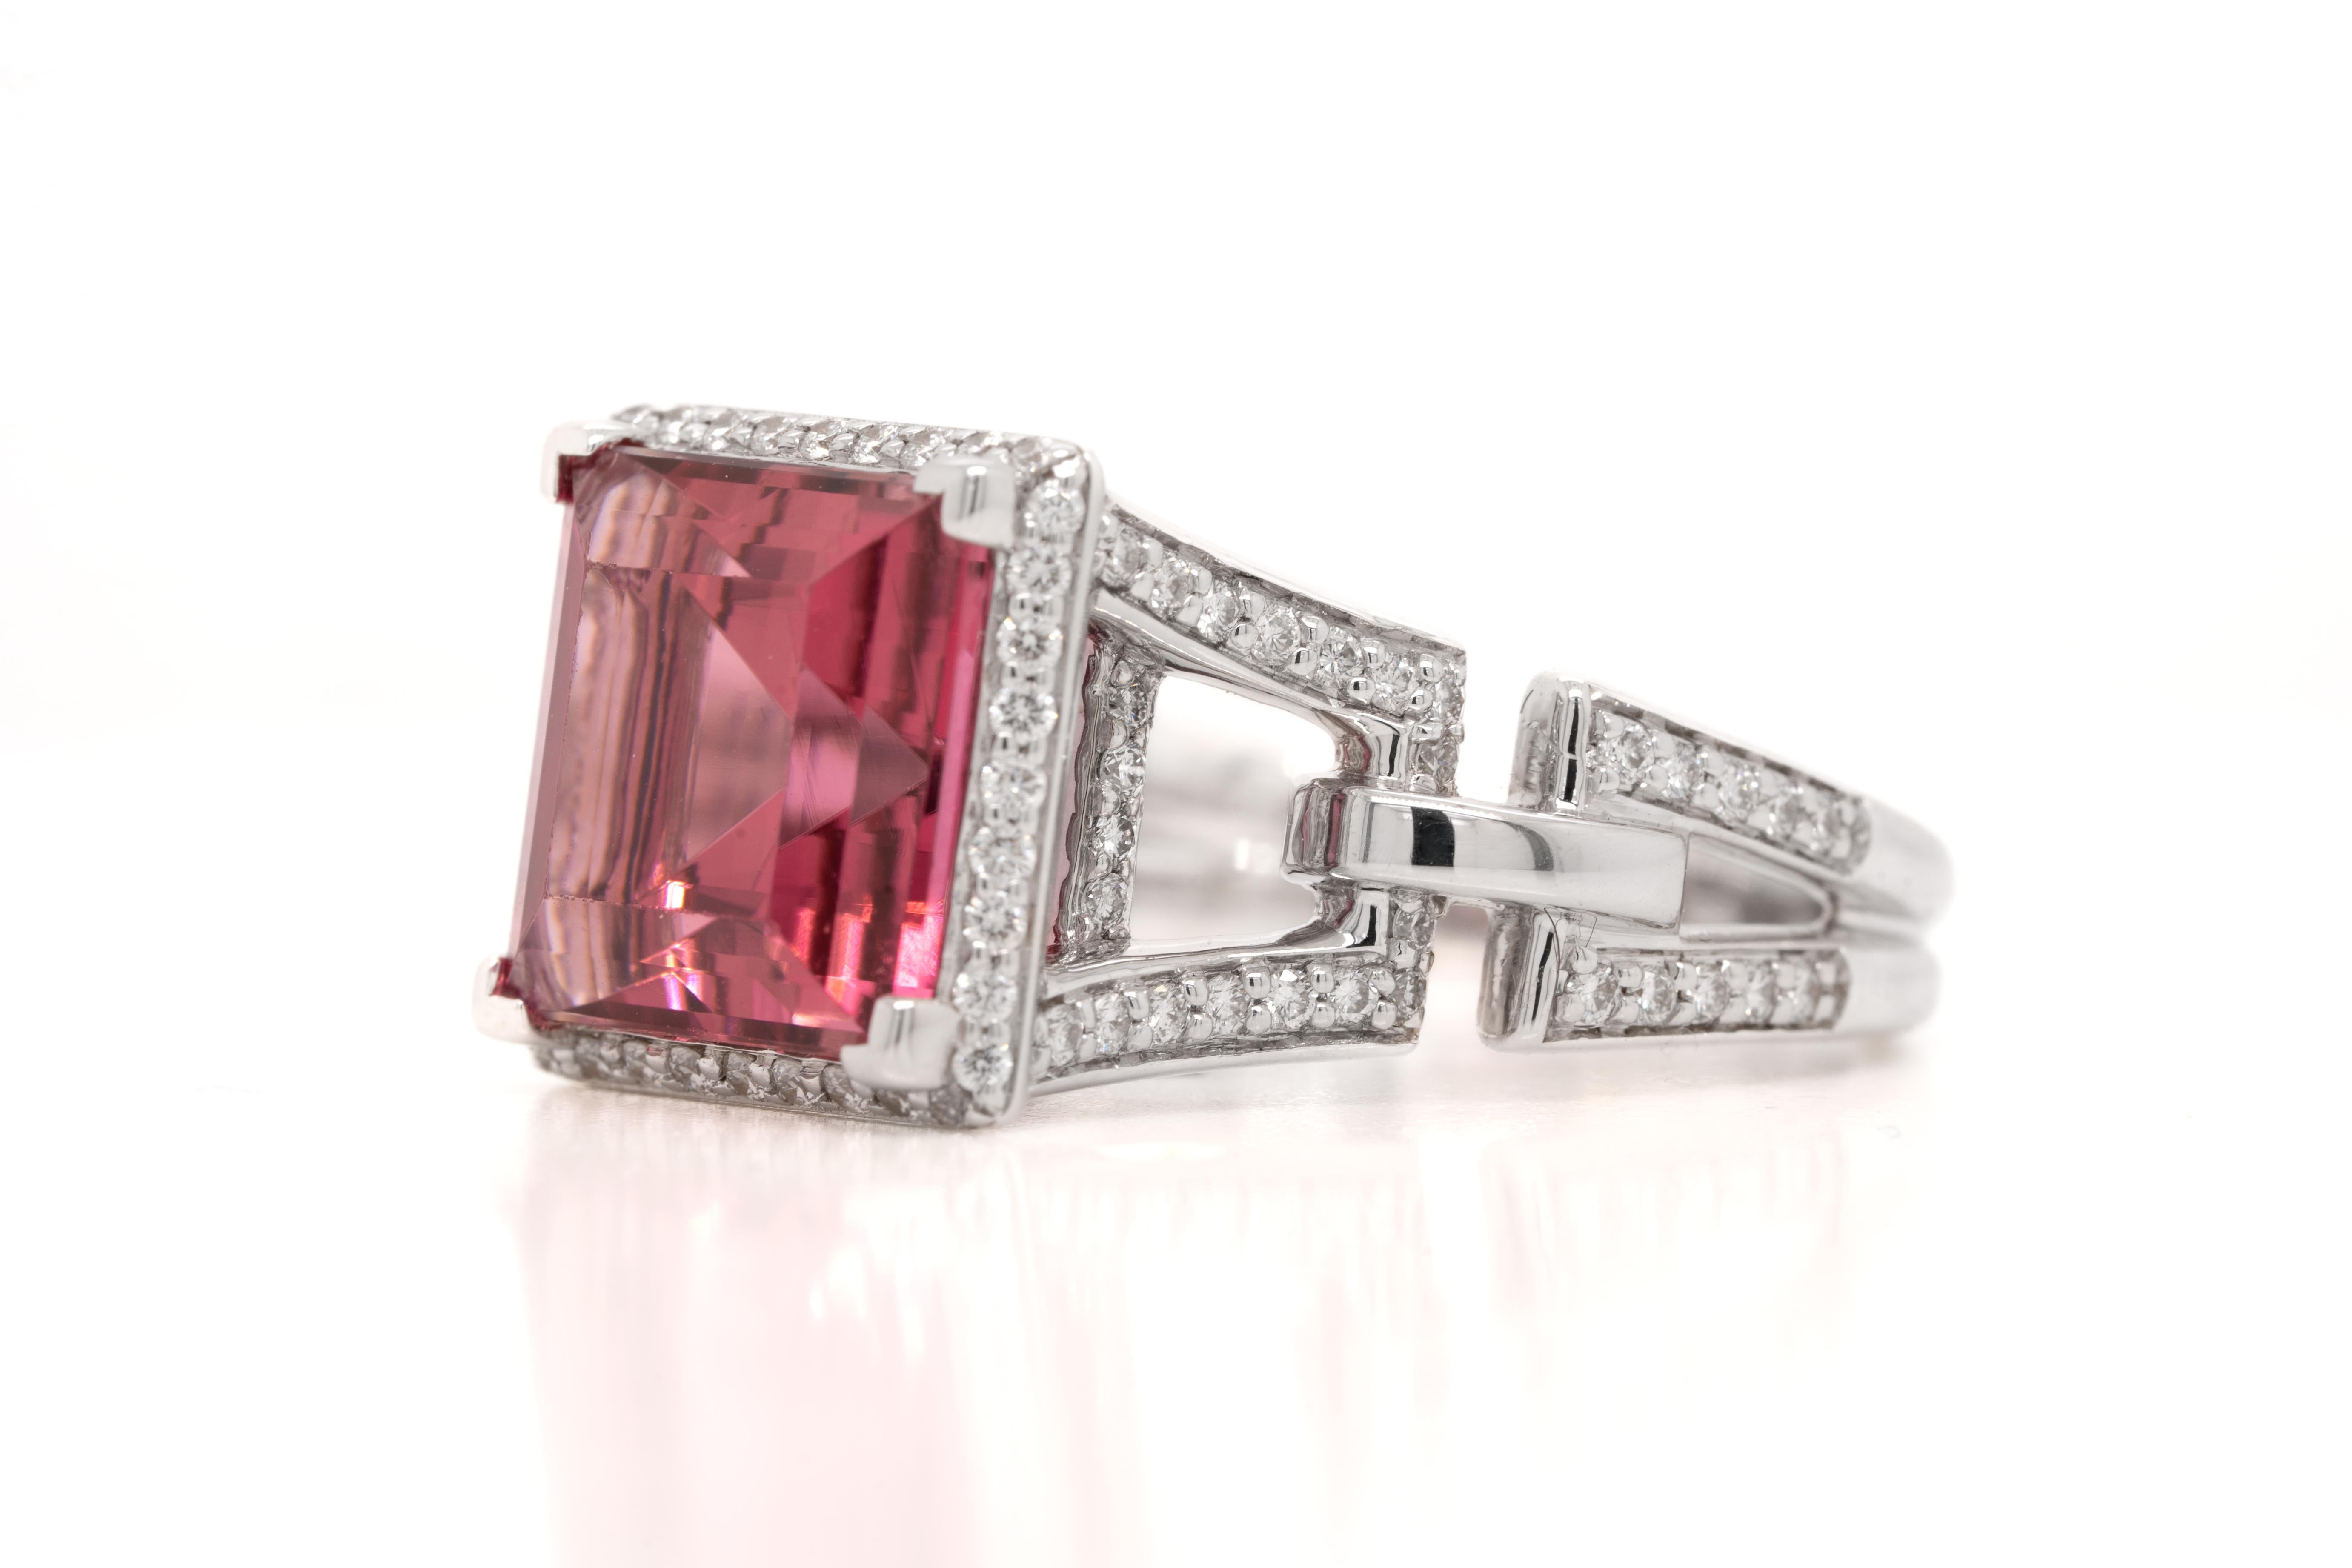 La bague de fiançailles Tamir Designer comprend une tourmaline rose vibrante quadrillée qui est remplie d'éclat. Le design unique du bracelet est orné de diamants ronds de taille brillant, sertis dans de l'or blanc 18 carats ! Il s'agit d'une